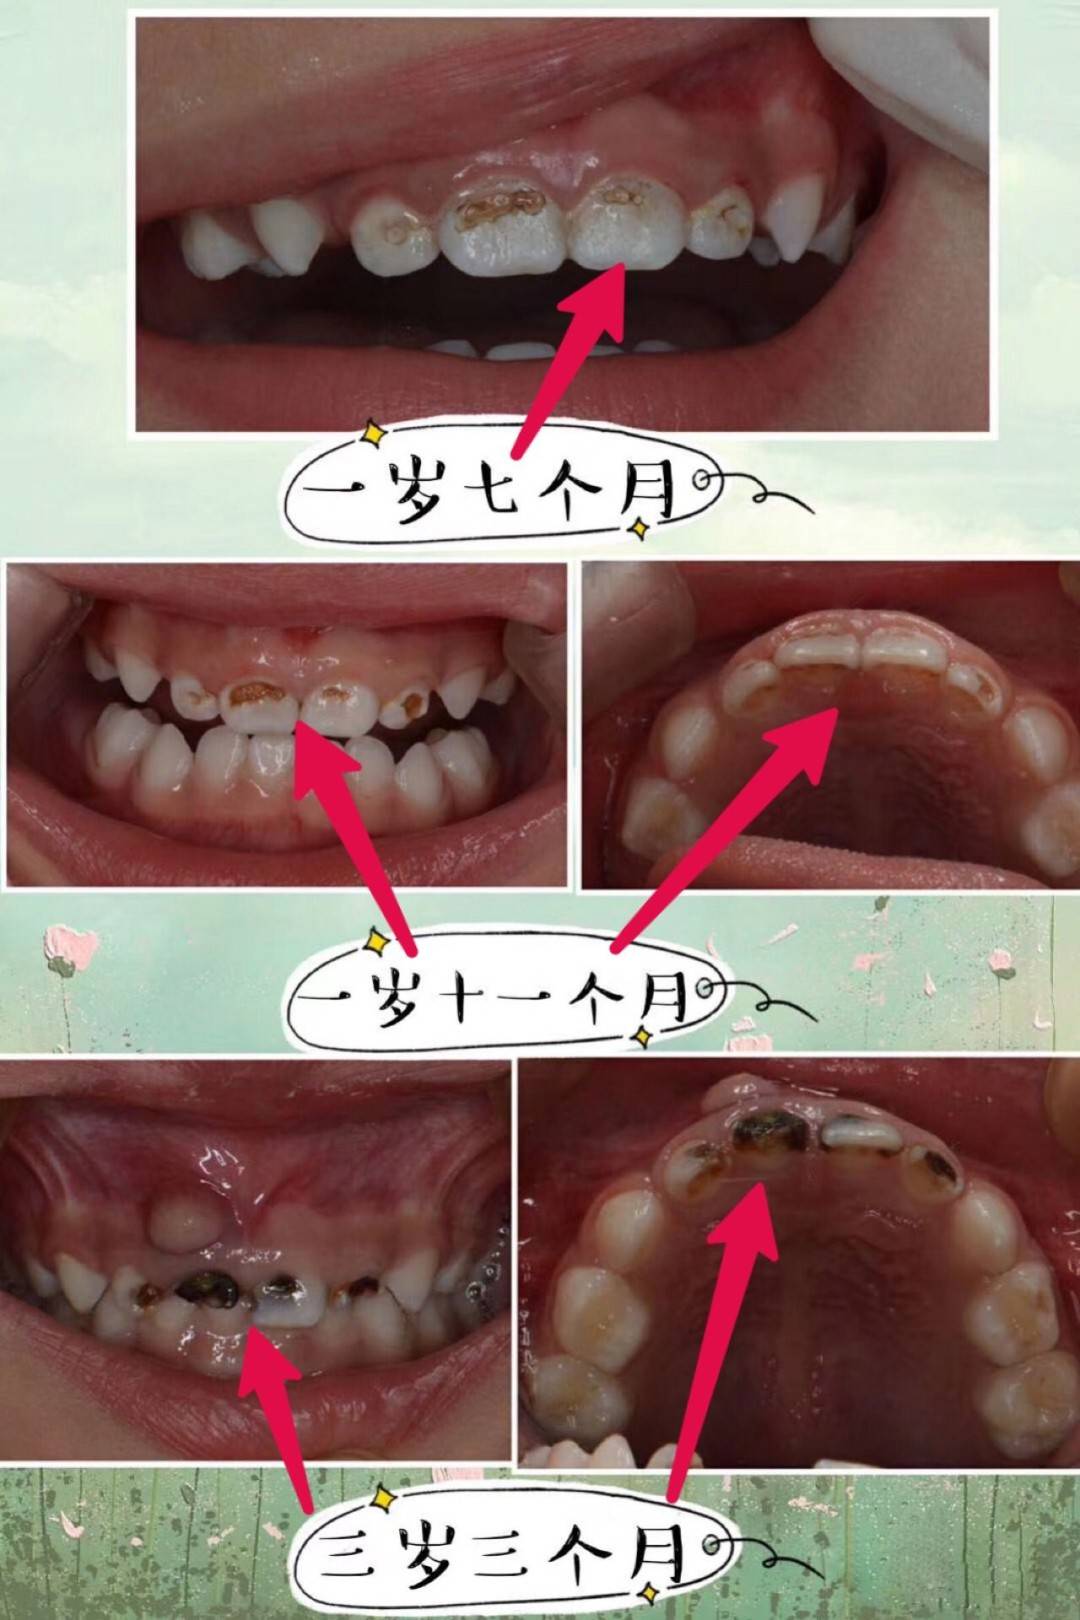 之所以不能补牙有三方面: 第一方面是:蛀牙出现疼痛,说明牙髓受细菌